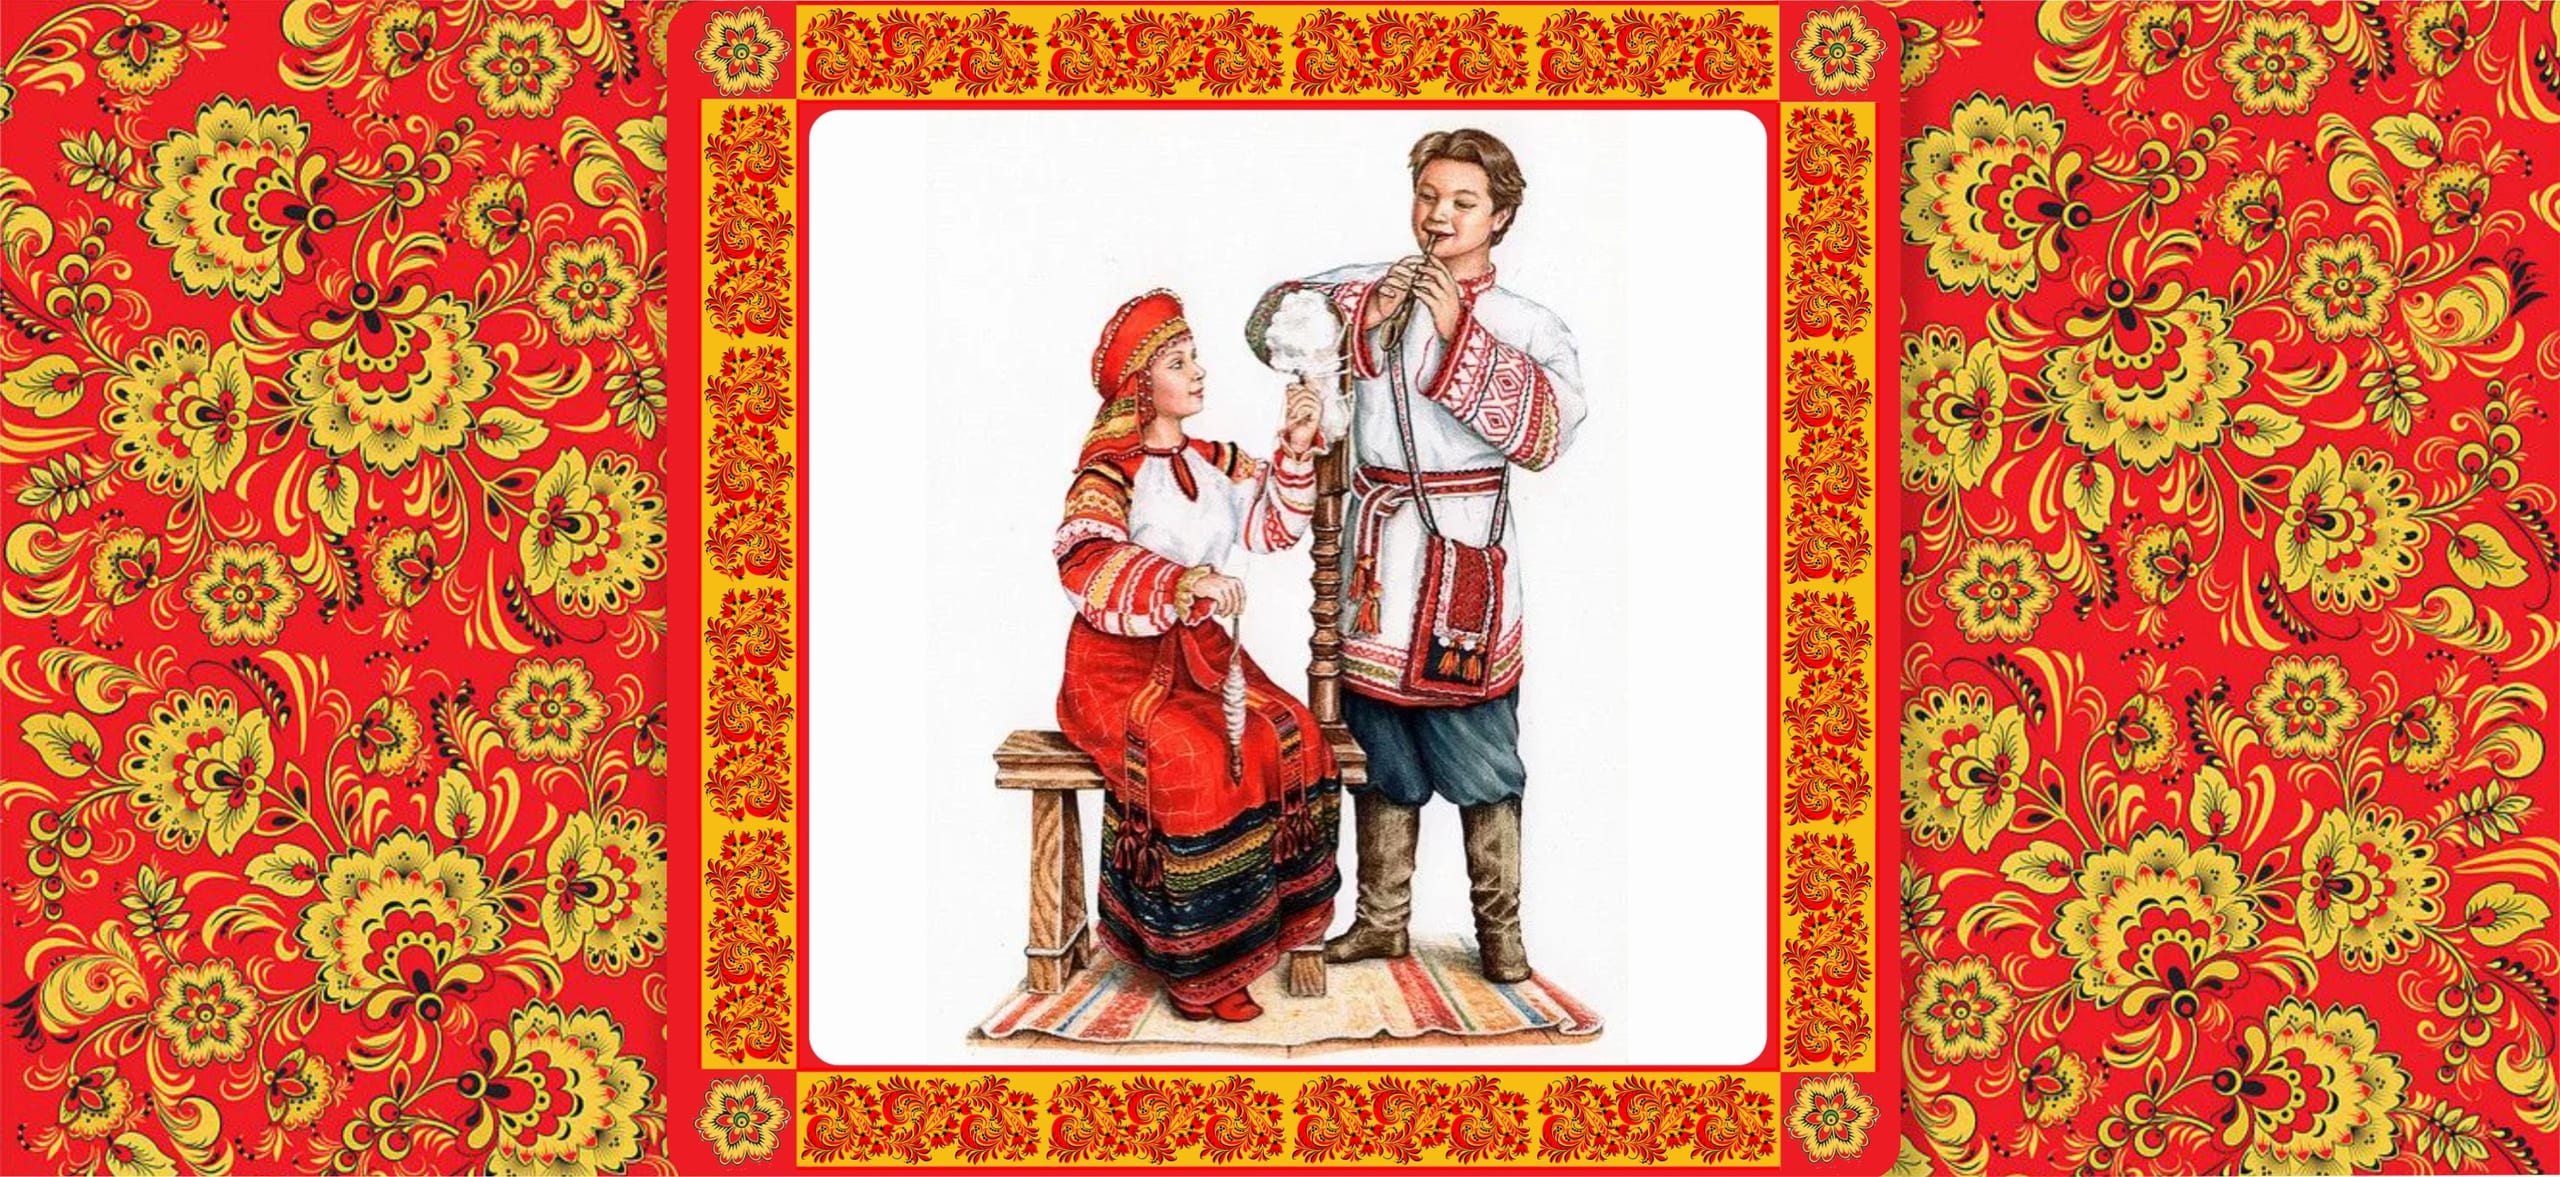 Обложка русские поговорки, мужчина и женщина в национальных русских костюмах